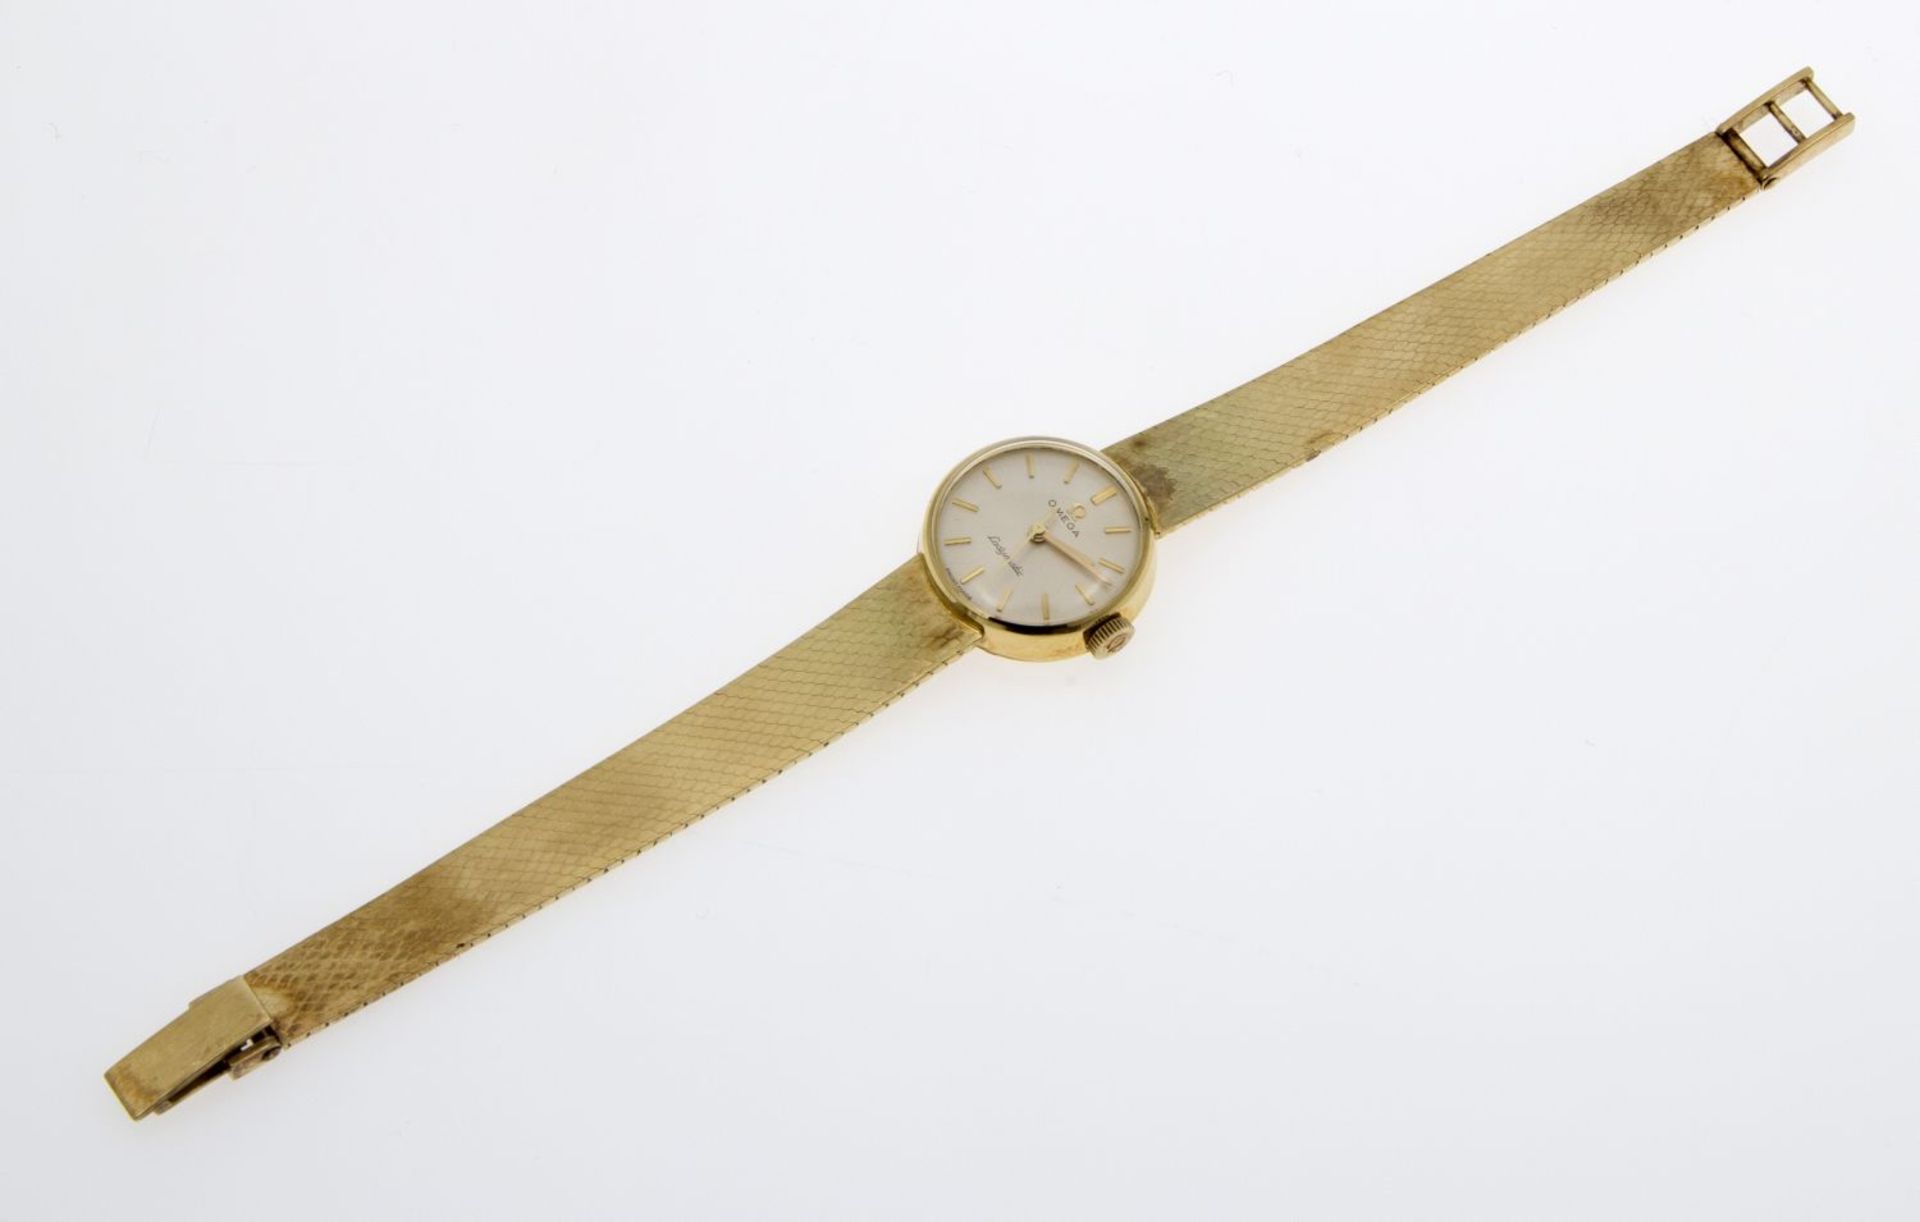 DamenarmbanduhrGehäuse und Armband aus Gelbgold 585. Rundes silberfarbenes Zifferblatt mit - Bild 2 aus 3